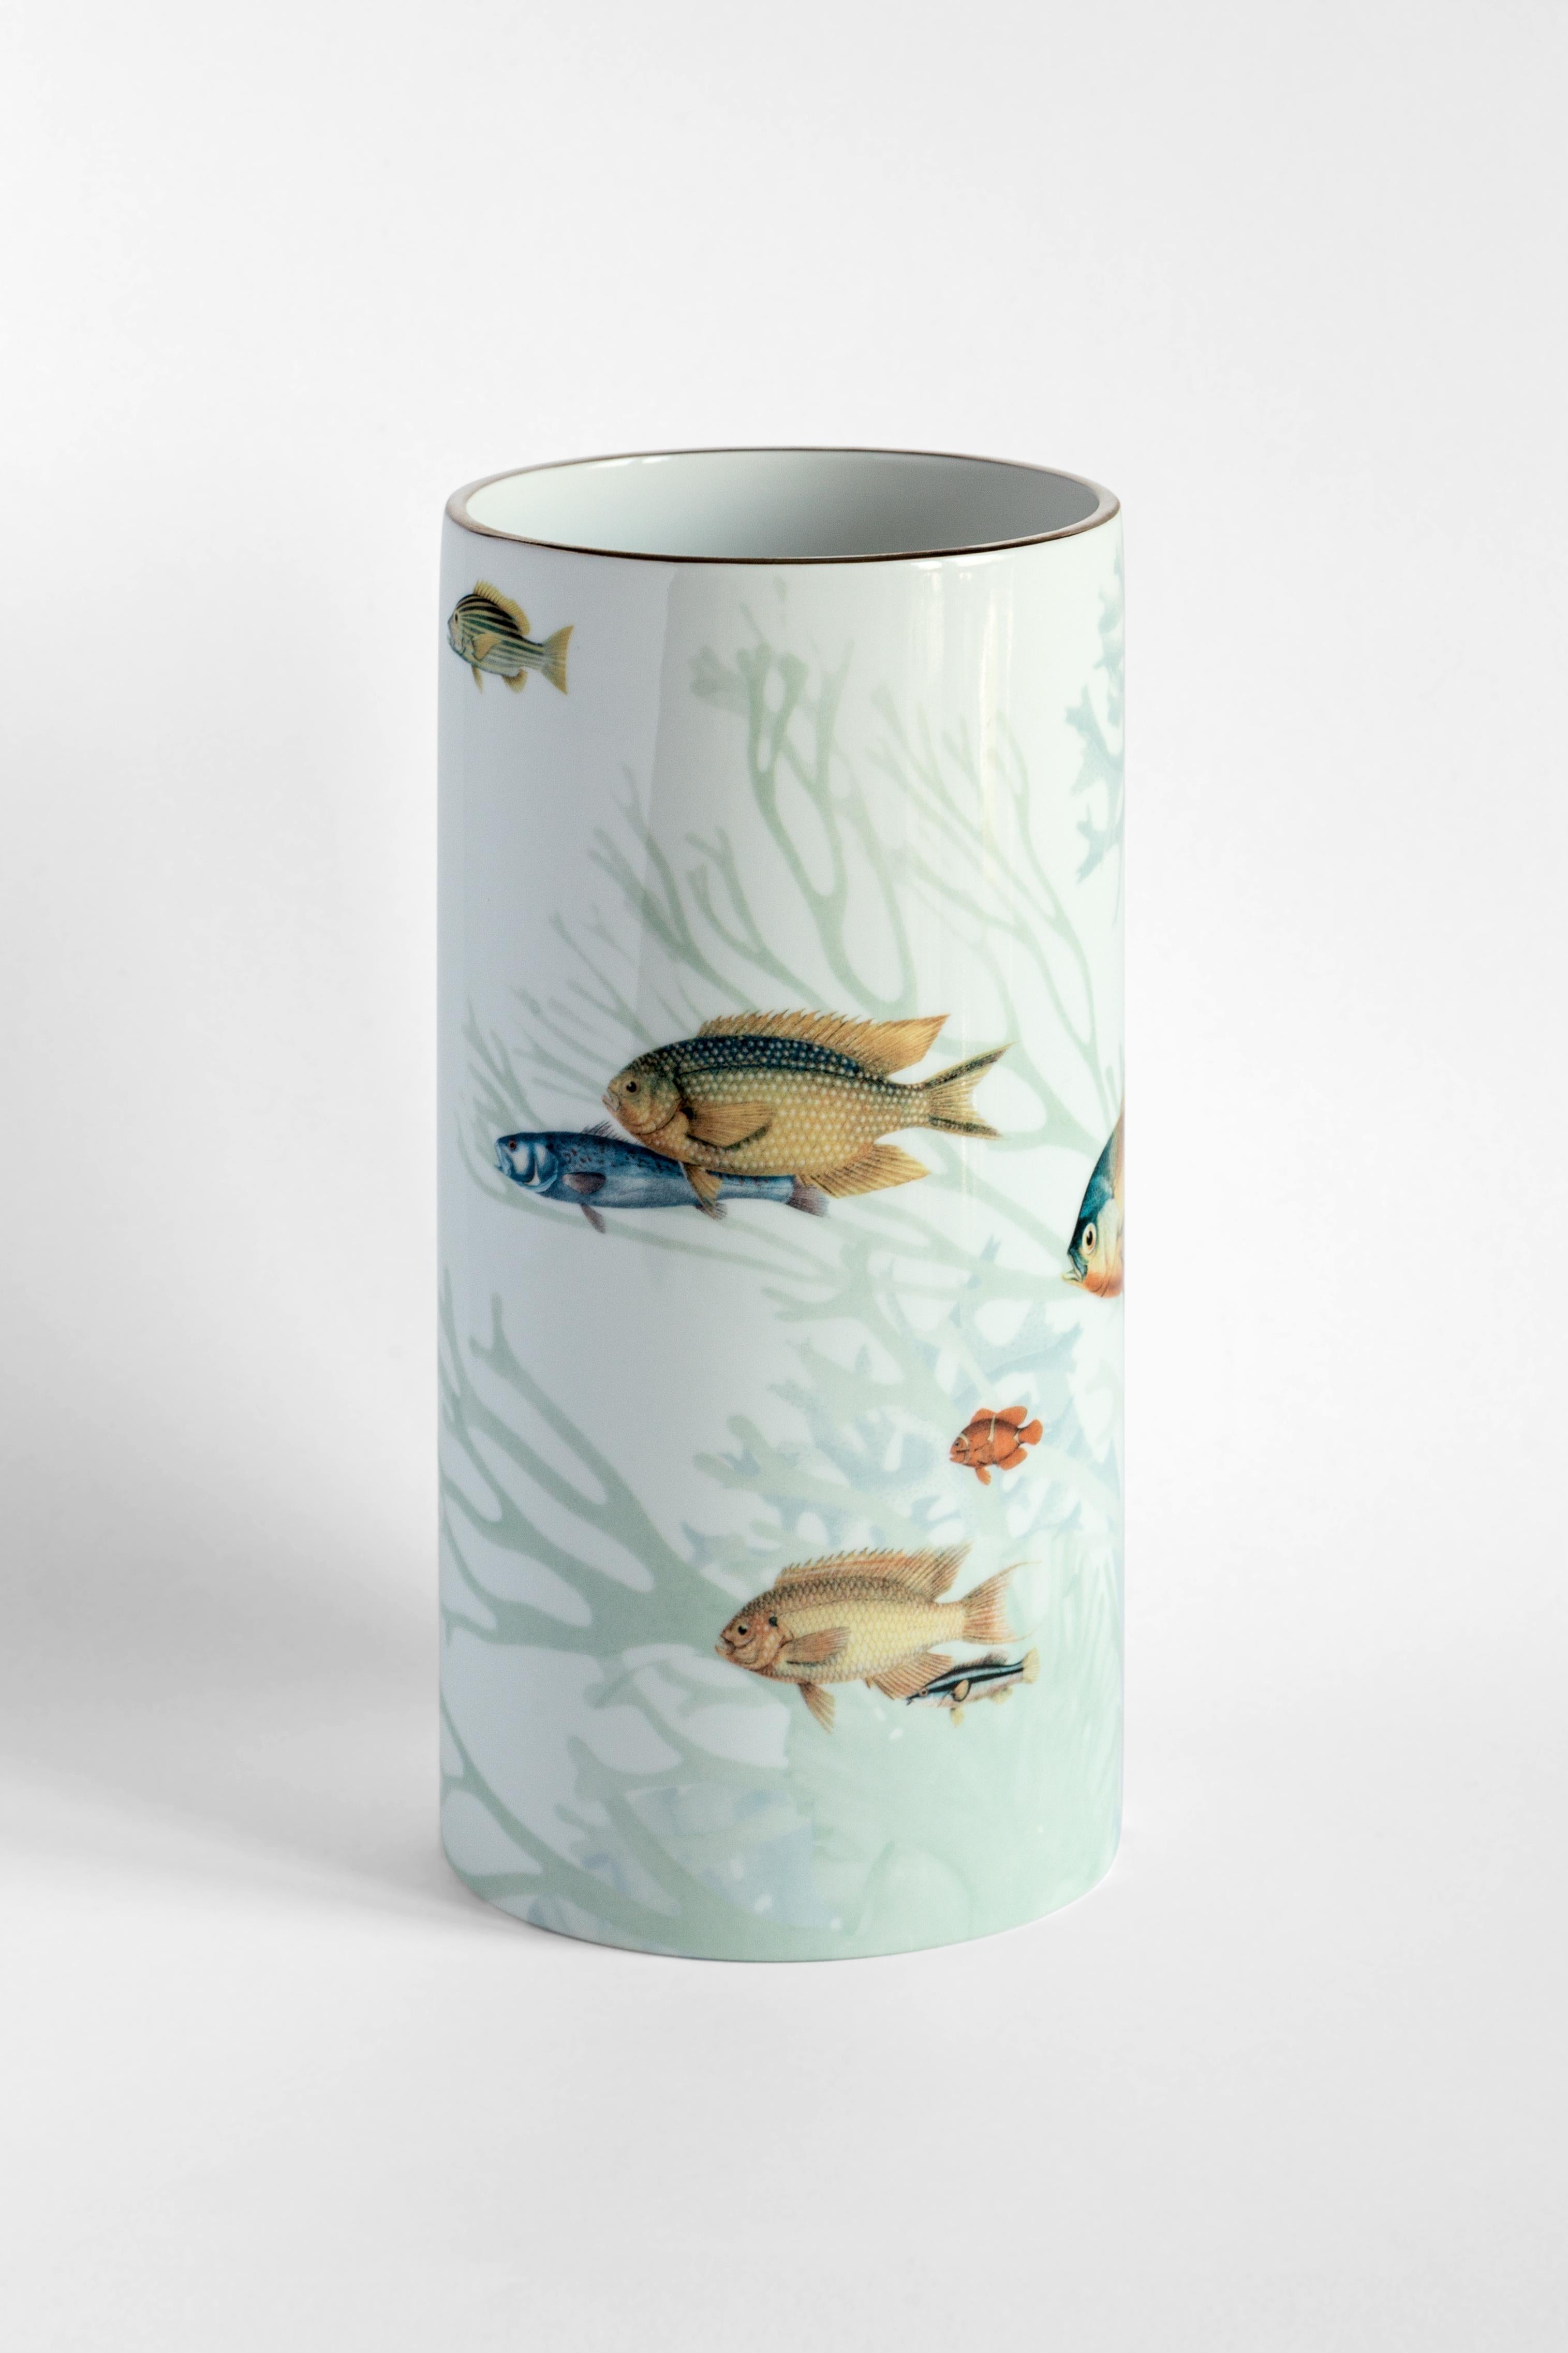 Inspiré par les îles japonaises Amami entourées de récifs coralliens, ce joyeux vase conçu par Vito Nesta présente un motif ludique de poissons de différentes tailles dans des couleurs éblouissantes. Fabriqué en porcelaine fine, ce vase s'intègre